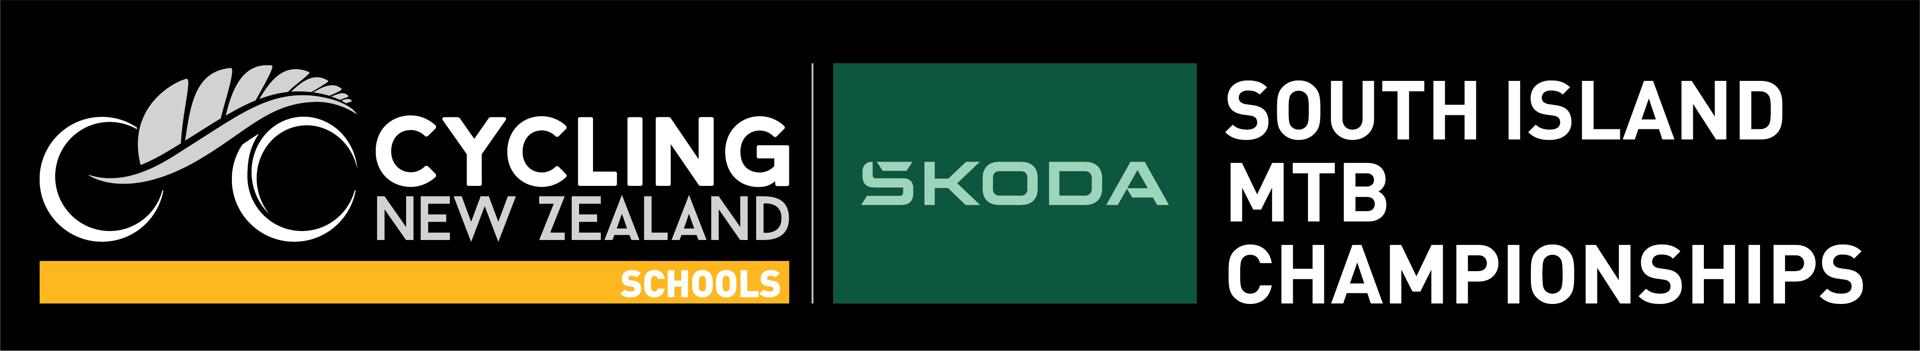 Skoda South Island School MTB Champs - Downhill Logo